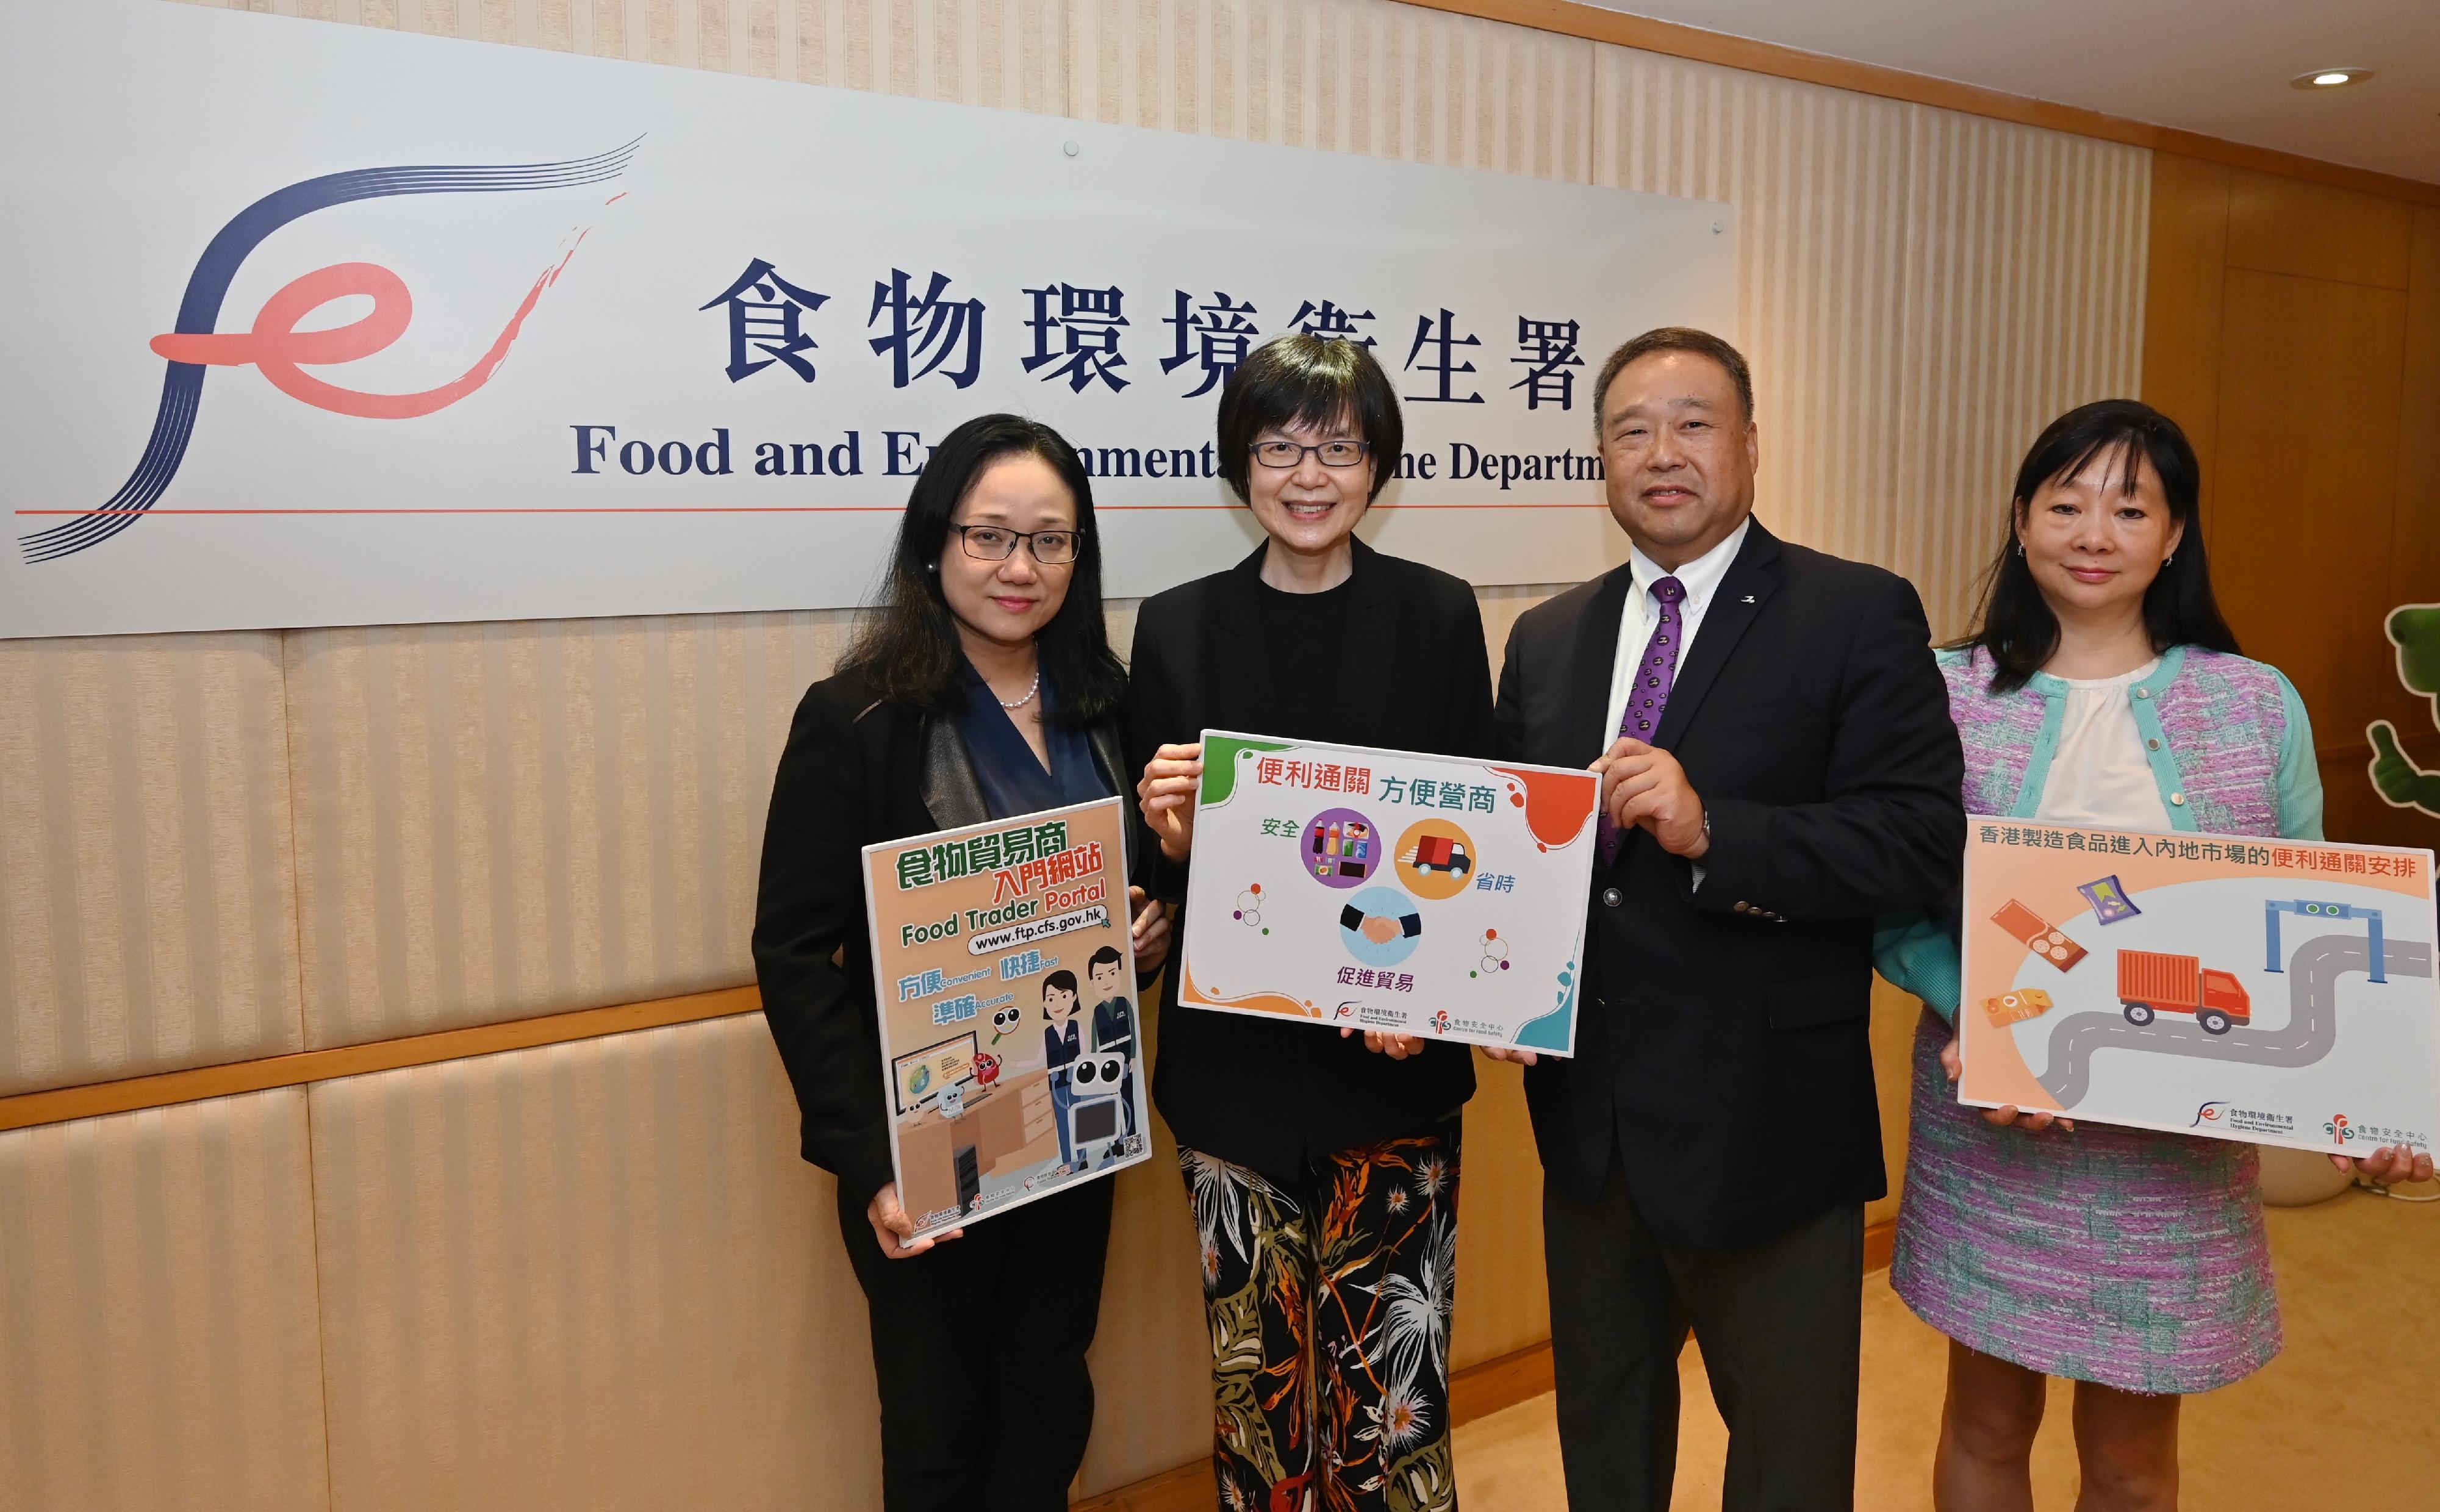 環境及生態局常任秘書長（食物）劉利群（左二）、食物安全專員黃宏醫生（左一）、香港工業總會常務副主席林世豪（右二）及香港工業總會總裁陳心愉（右一）於簡介會上合照。